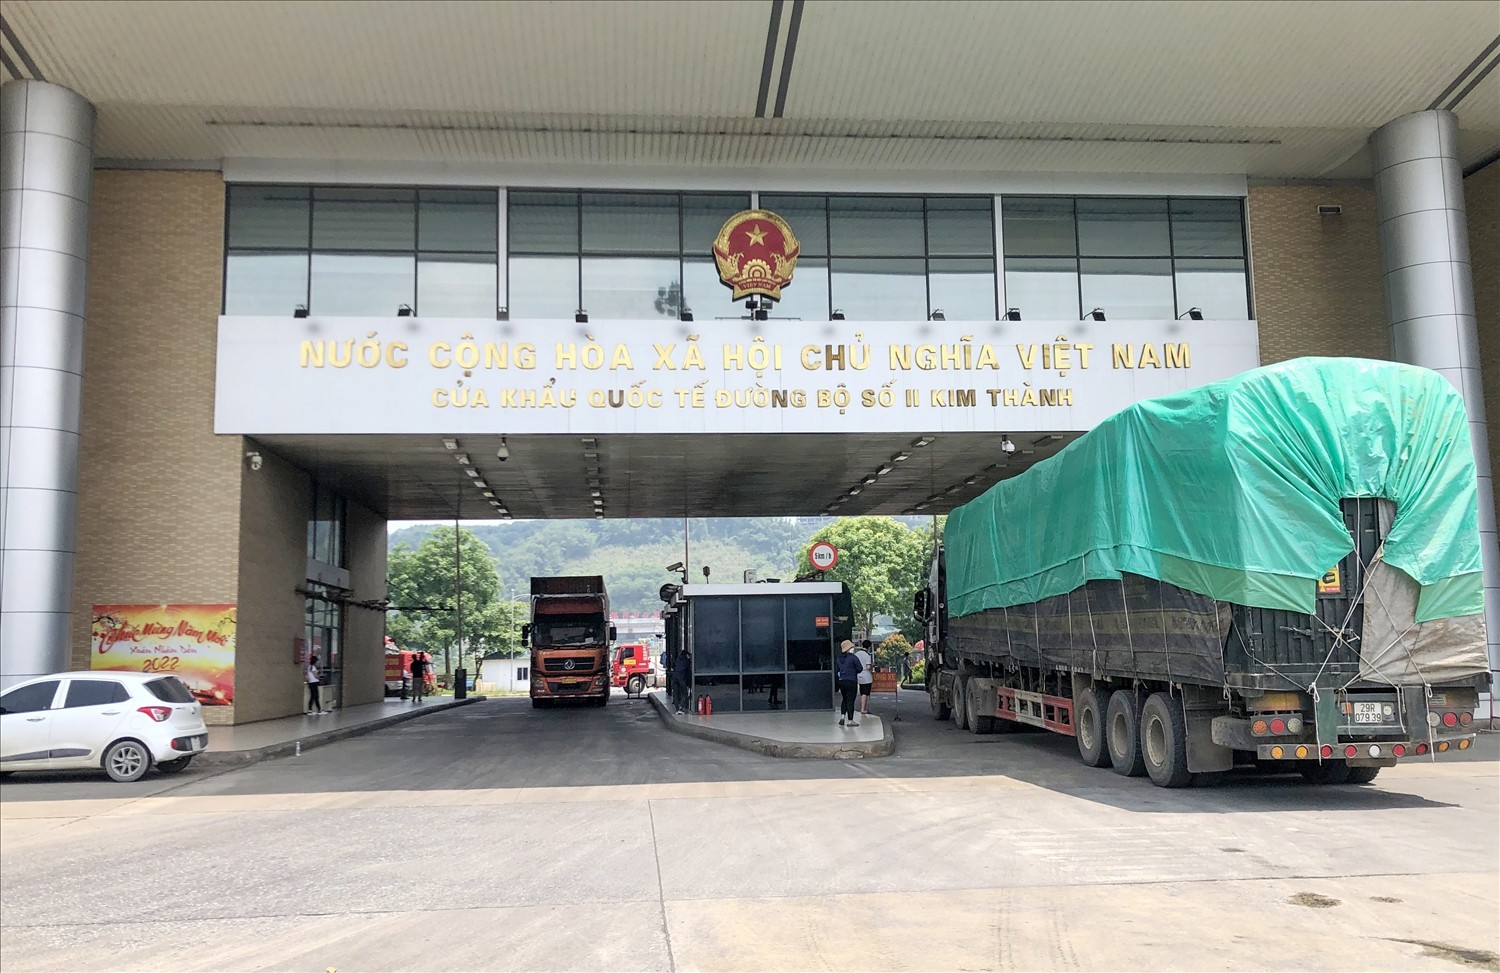 Lào Cai: Mỗi ngày có trên 400 xe hàng xuất nhập khẩu qua cửa khẩu